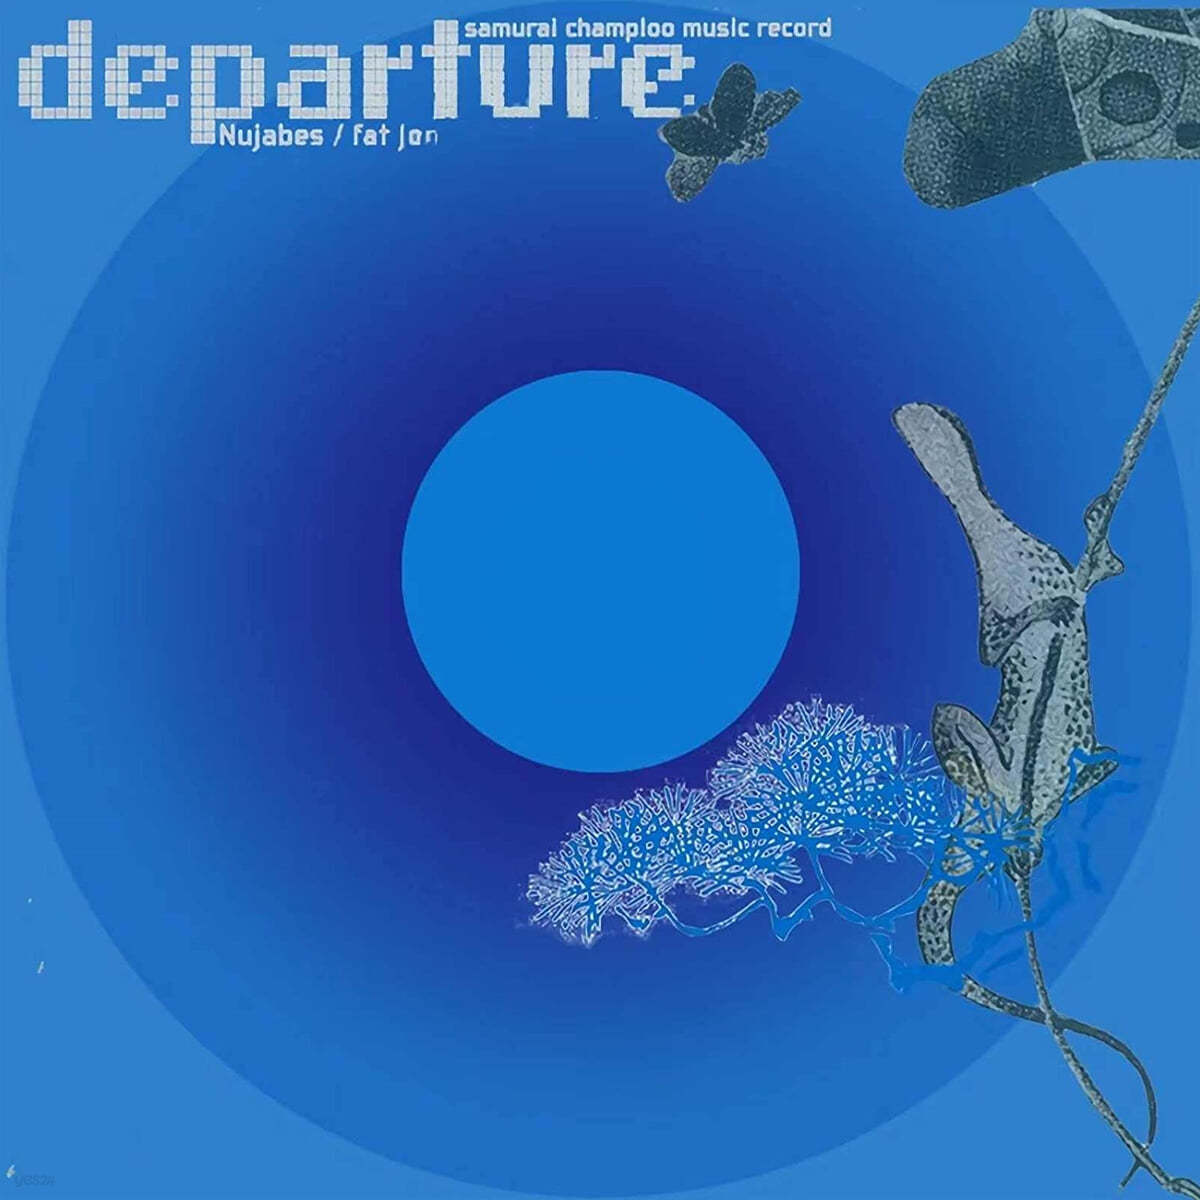 사무라이 참프루 애니메이션 음악 - 디파쳐 (Samurai Champloo Music Record: Departure Original Soundtrack by Nujabes, fat jon) [2LP] 